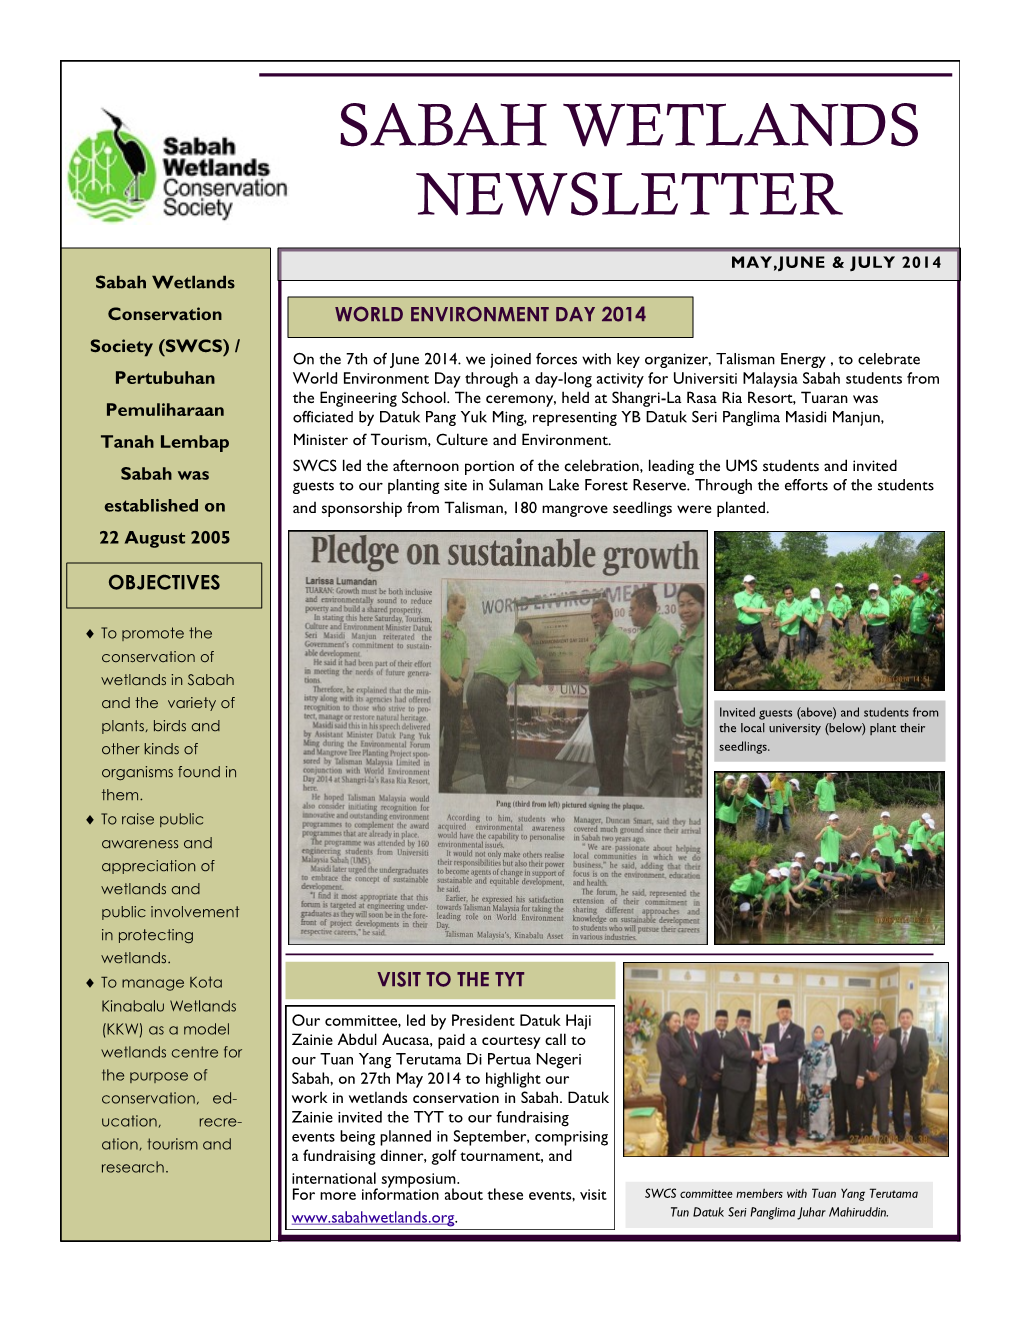 Sabah Wetlands Newsletter